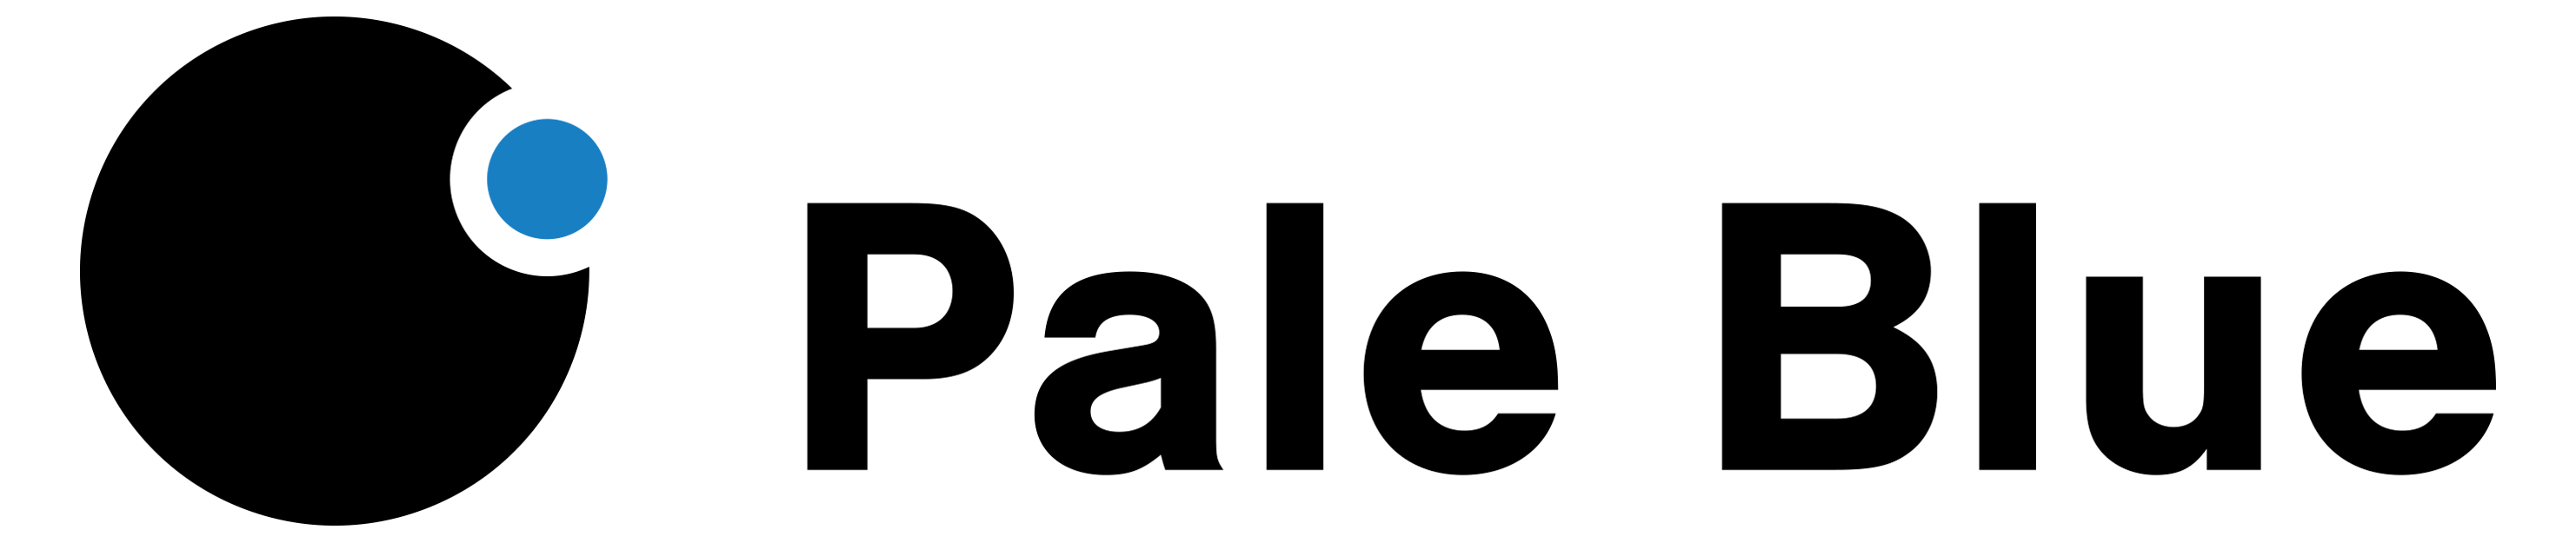 Pale Blue logo